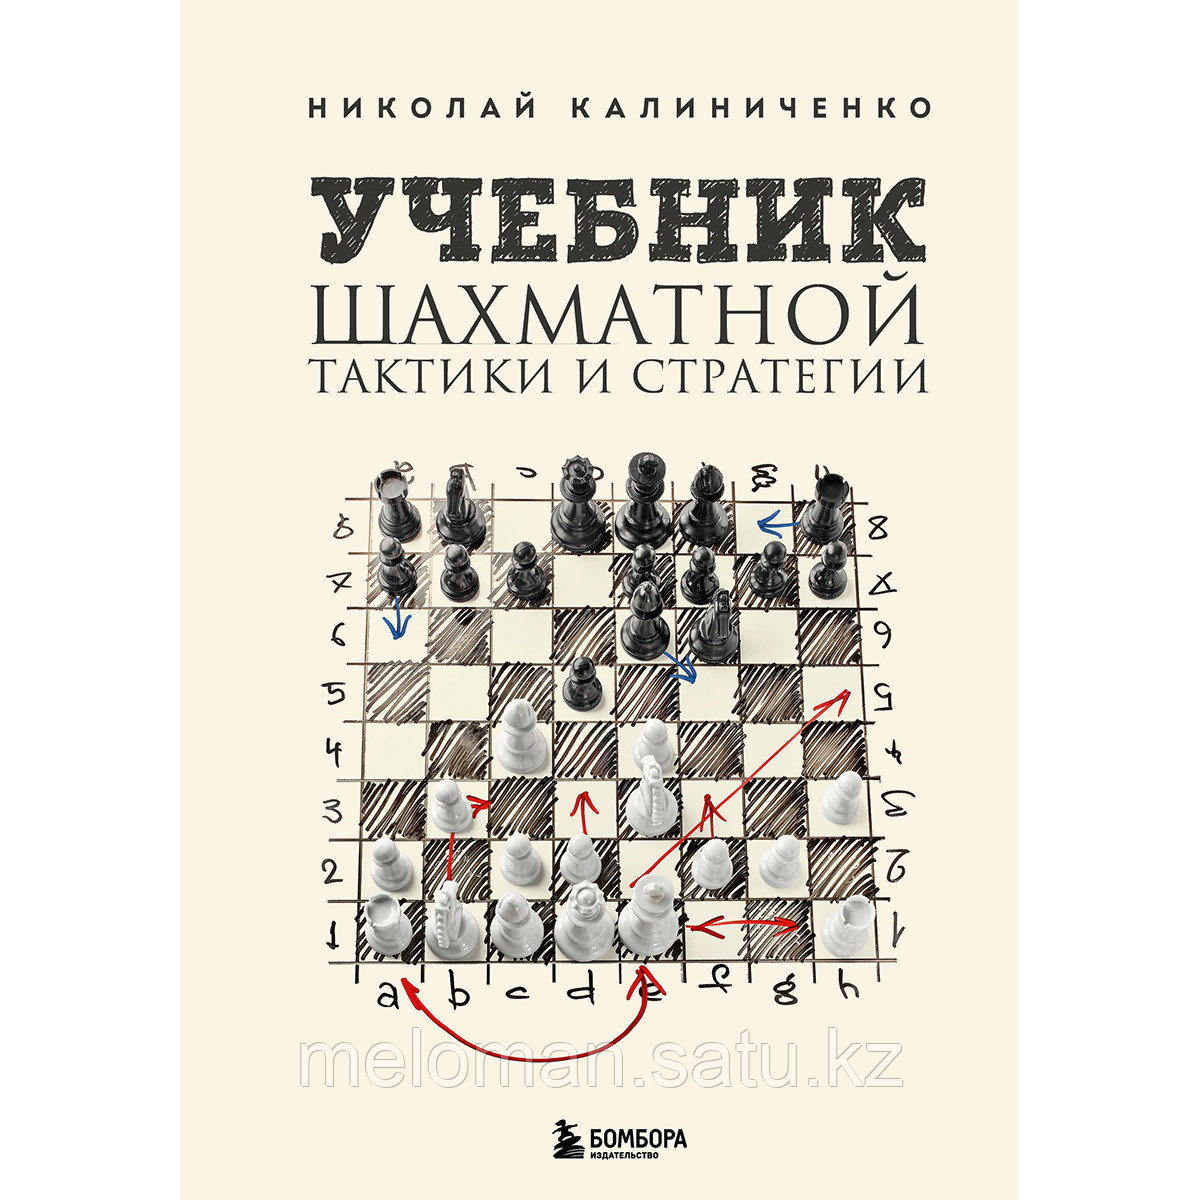 Калиниченко Н. М.: Учебник шахматной тактики и стратегии. 2-е изд.